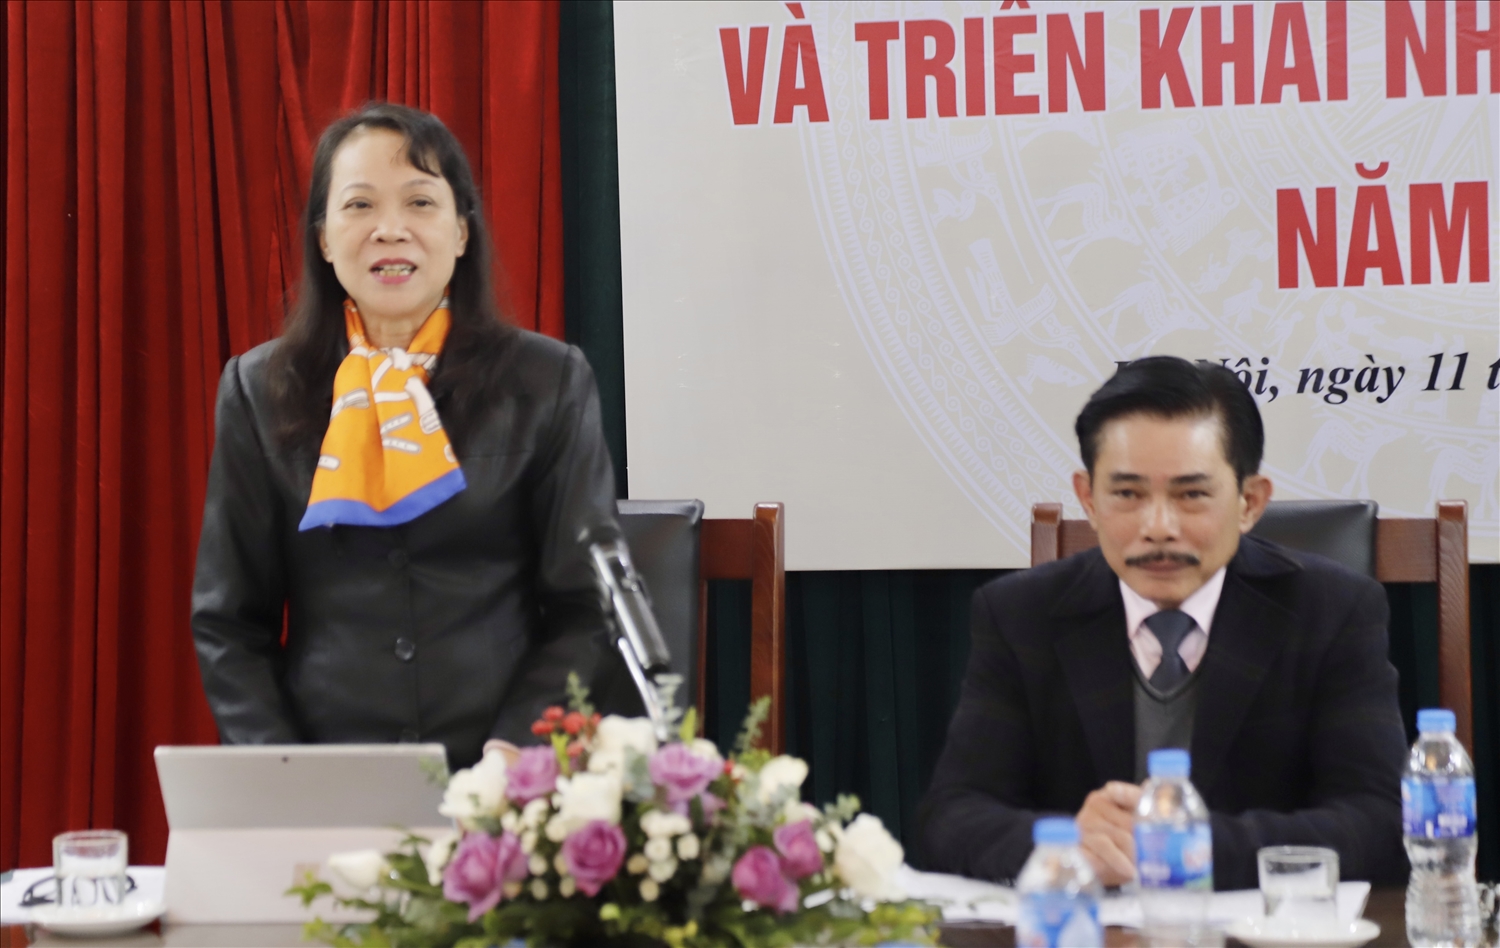 Thứ trưởng, Phó Chủ nhiệm UBDT Hoàng Thị Hạnh phát biểu tại buổi gặp mặt